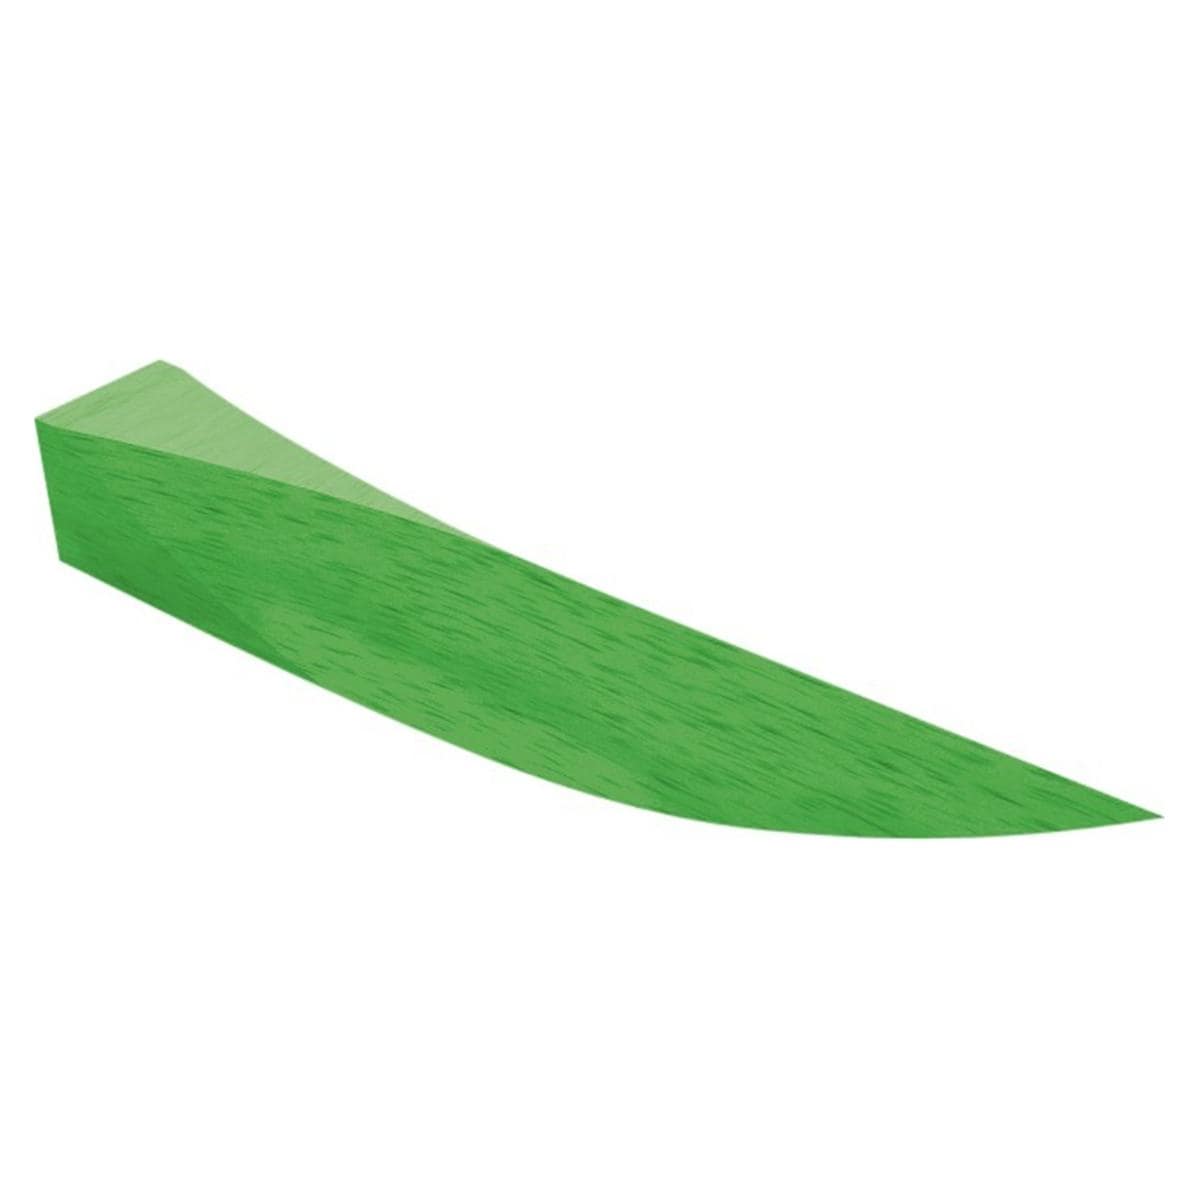 Interdentalkeile Ahorn, Beutel - Einzelgrößen - Grün, 13 mm (M), Packung 100 Stück